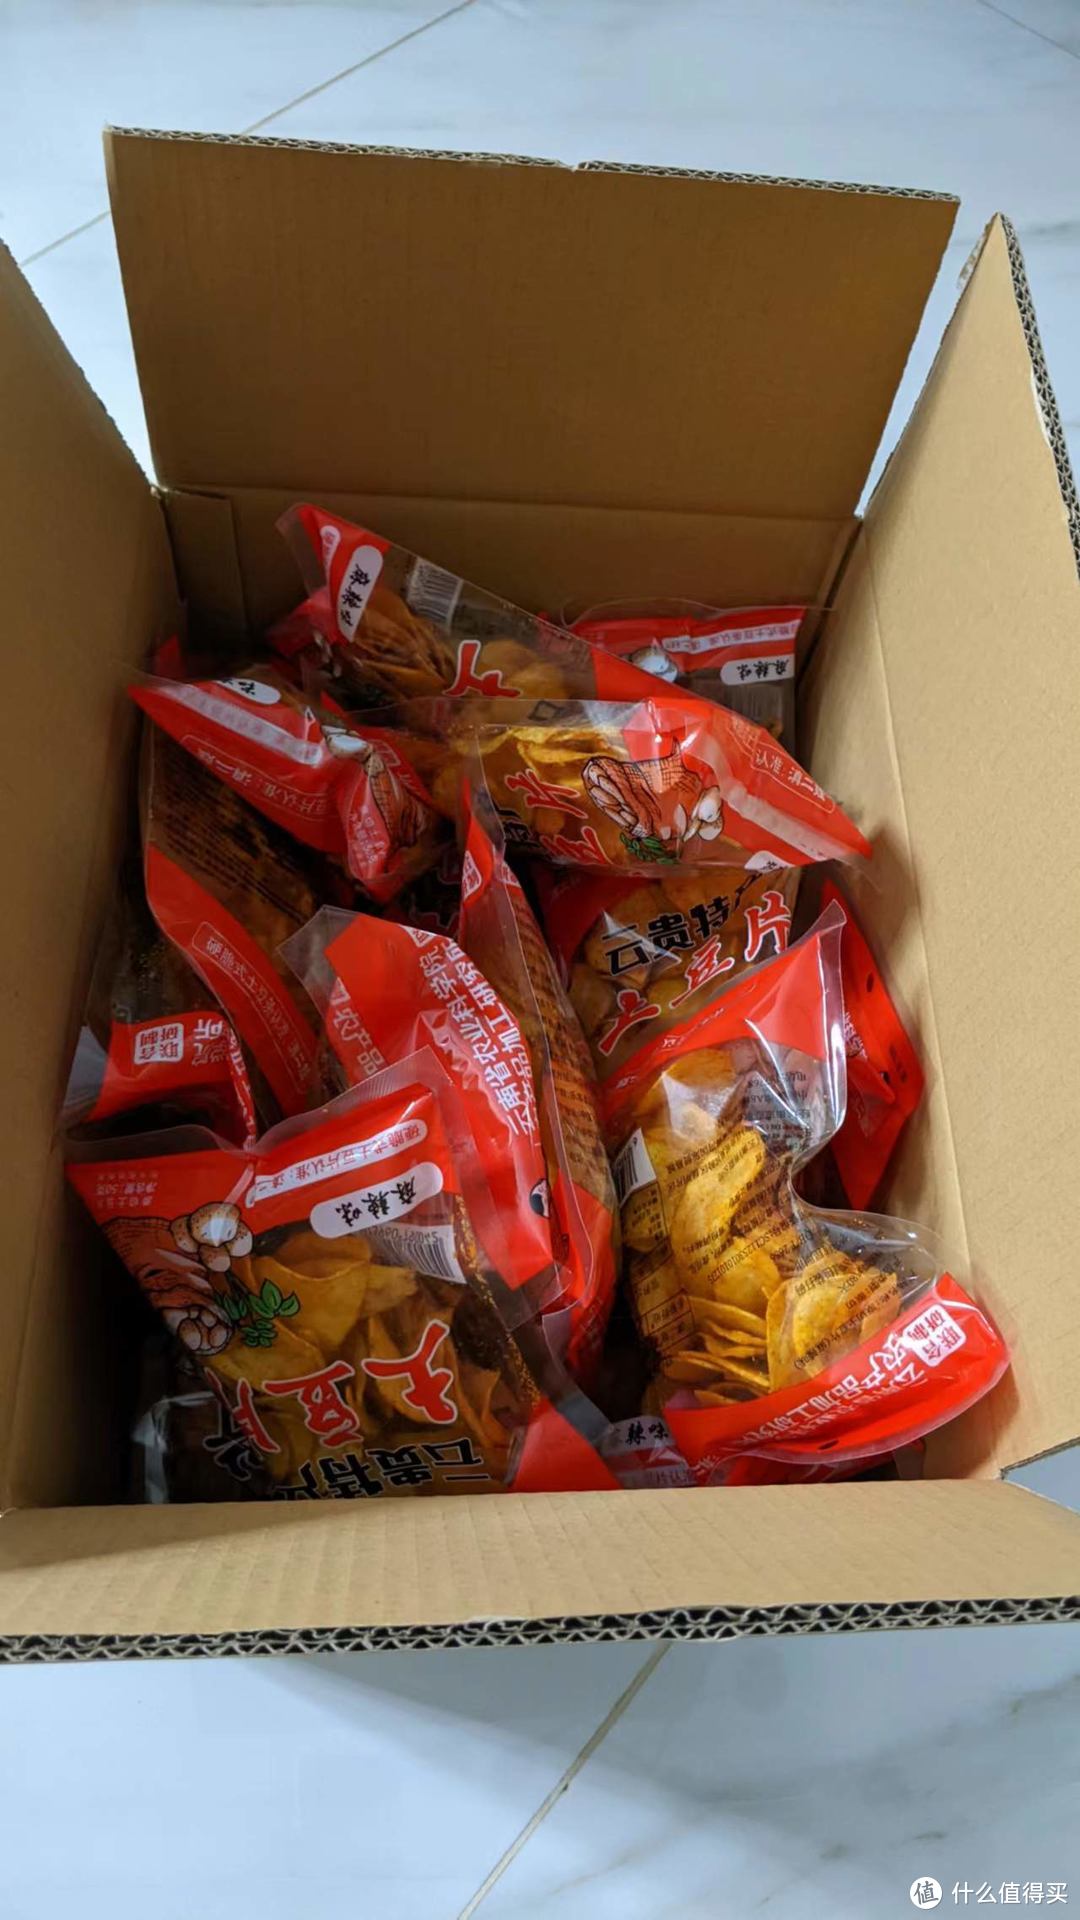 收到了21包值得买的云南农科土豆零食